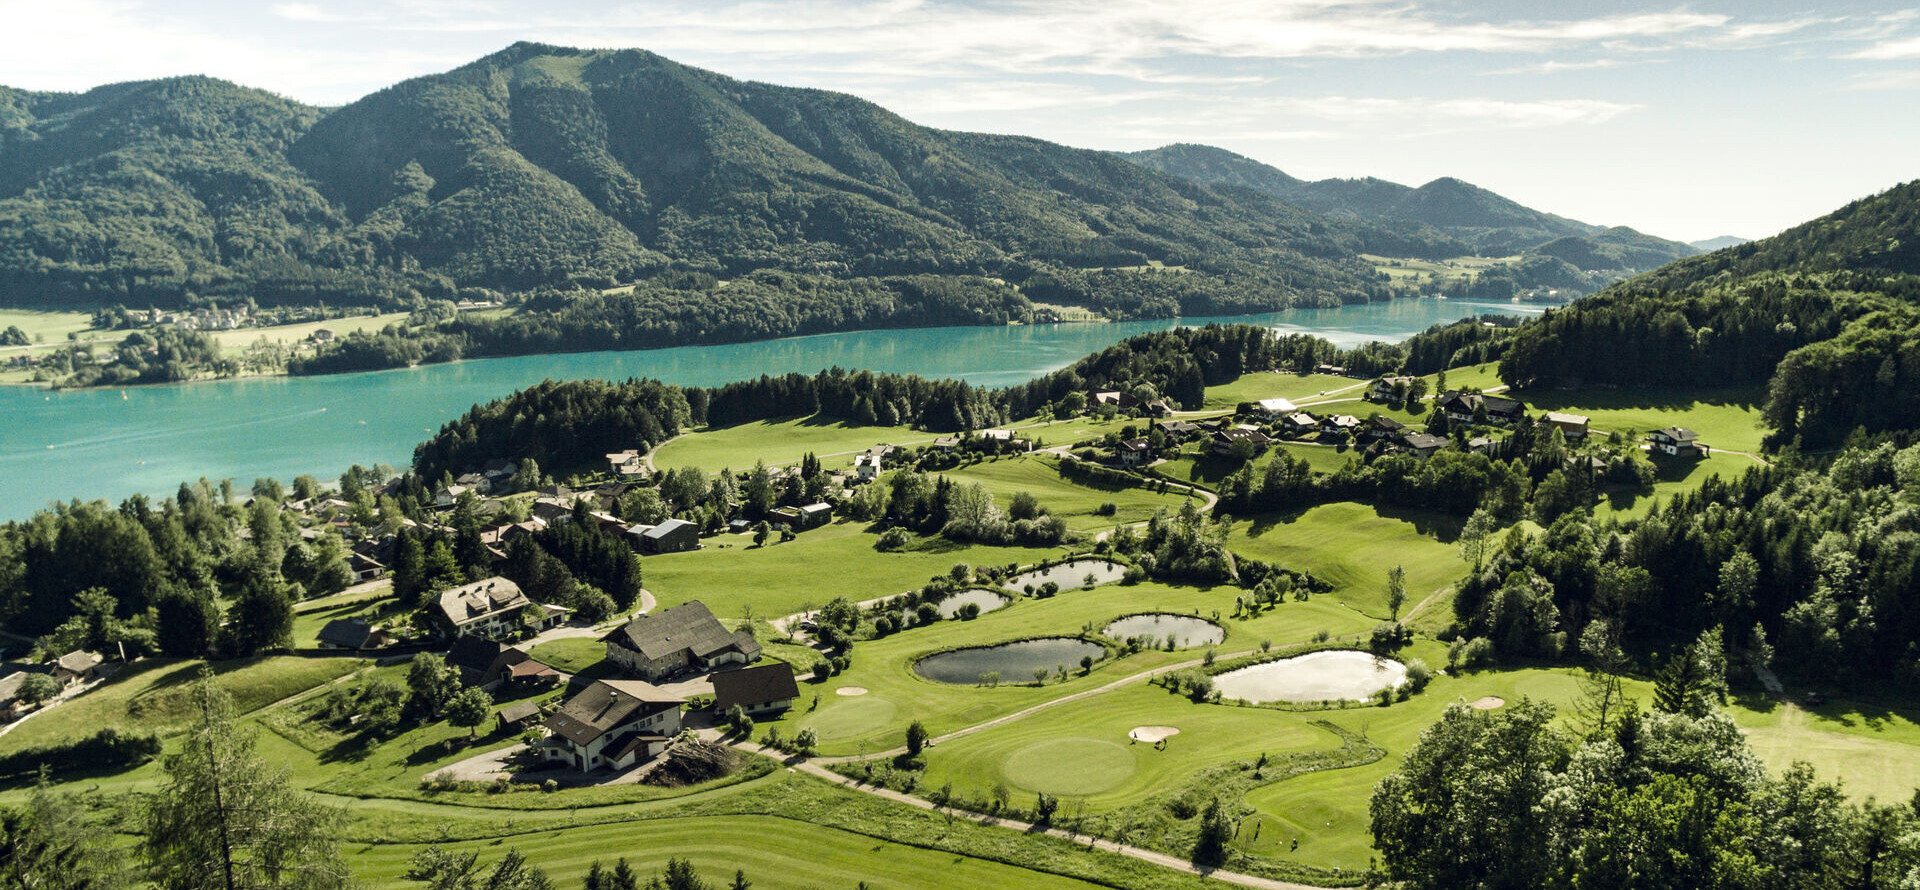 Blick auf den Golfplatz am Fuschlsee im Salzburger Land.